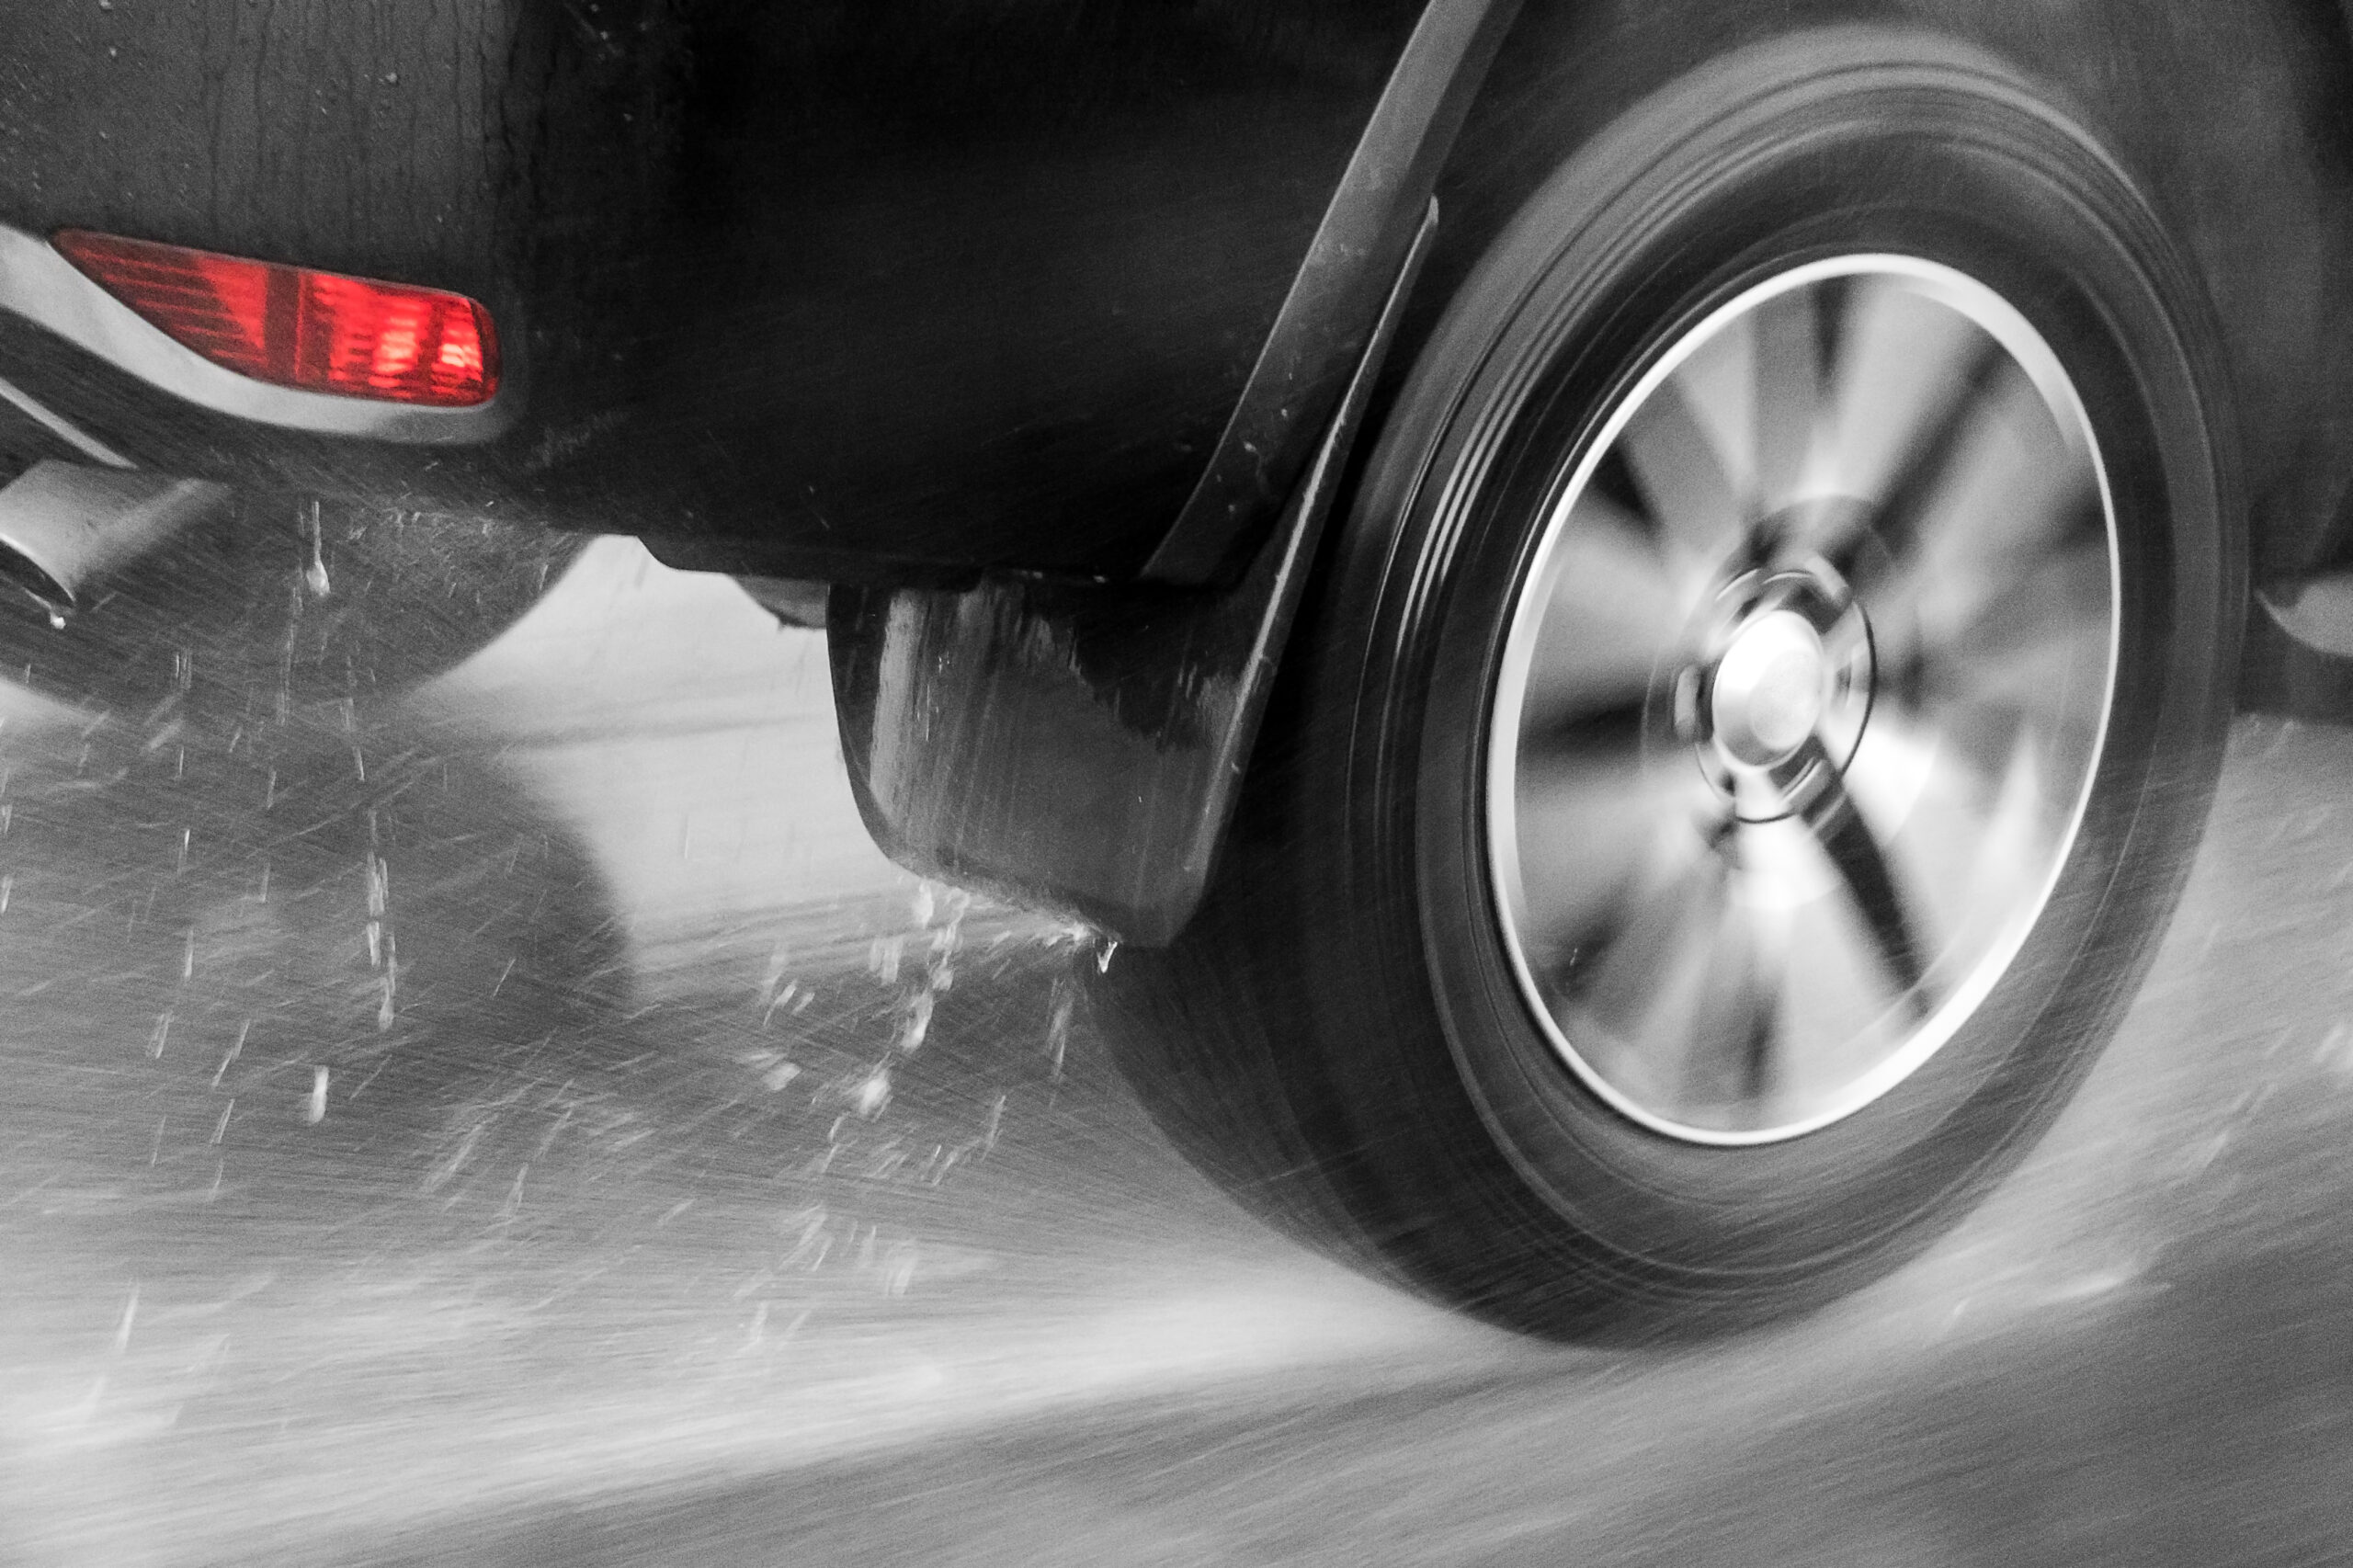 Freios ABS podem atrapalhar o motorista em aquaplanagem na estrada?